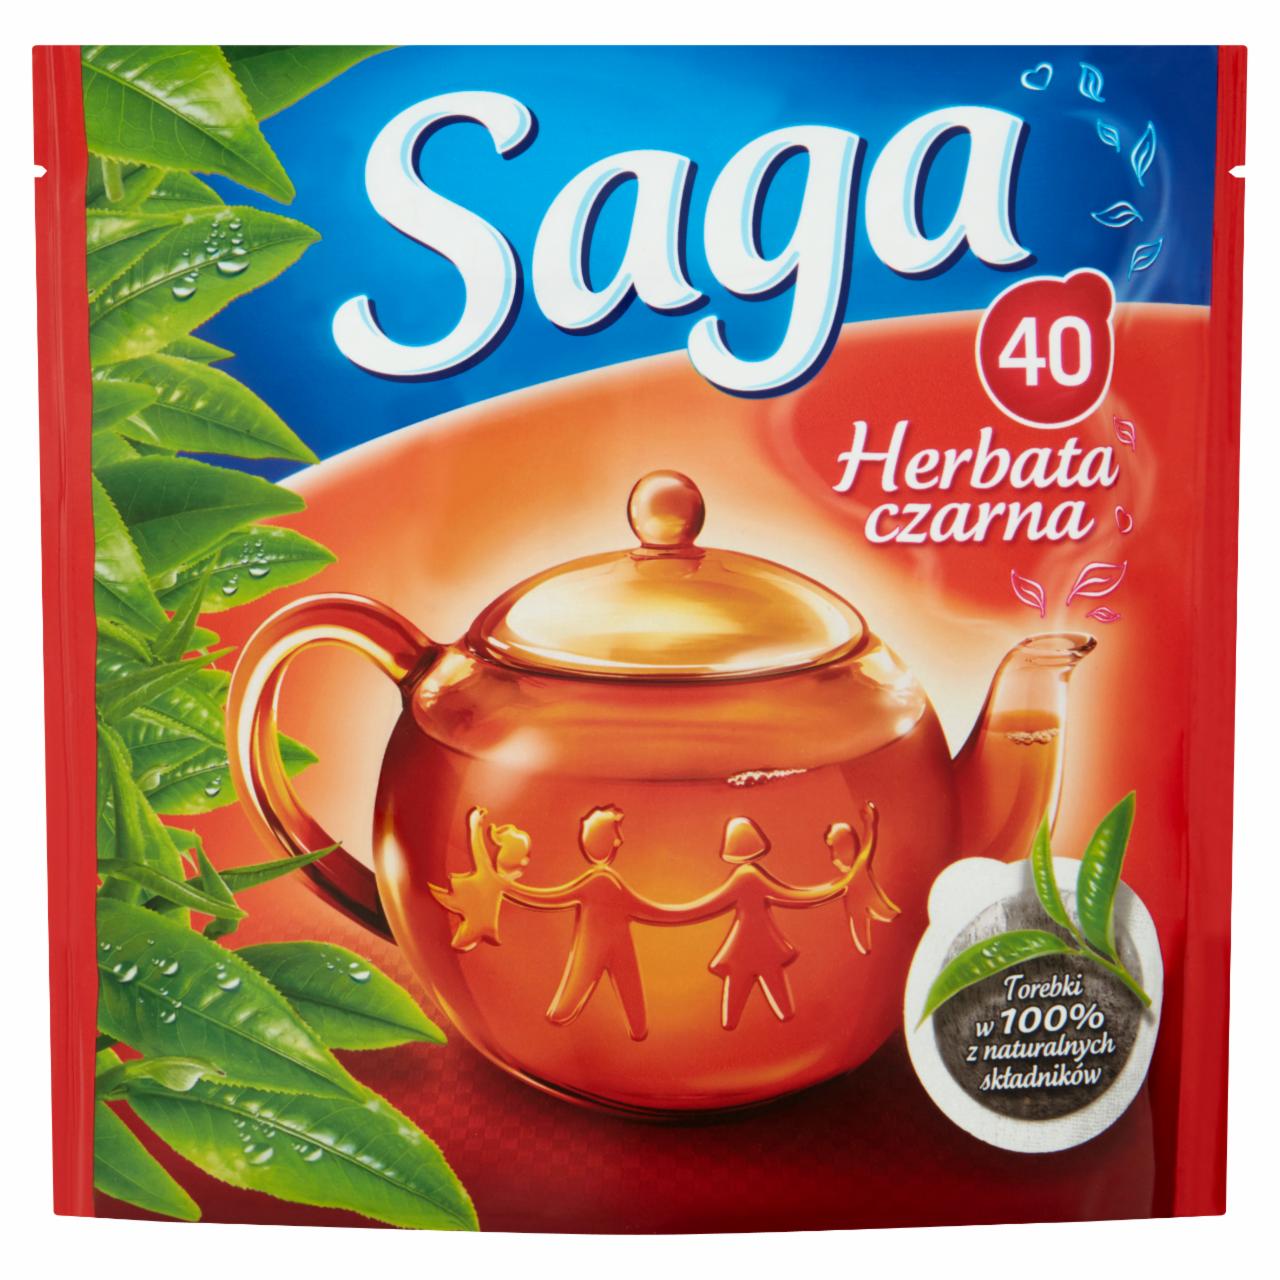 Zdjęcia - Saga Herbata czarna 56 g (40 torebek)